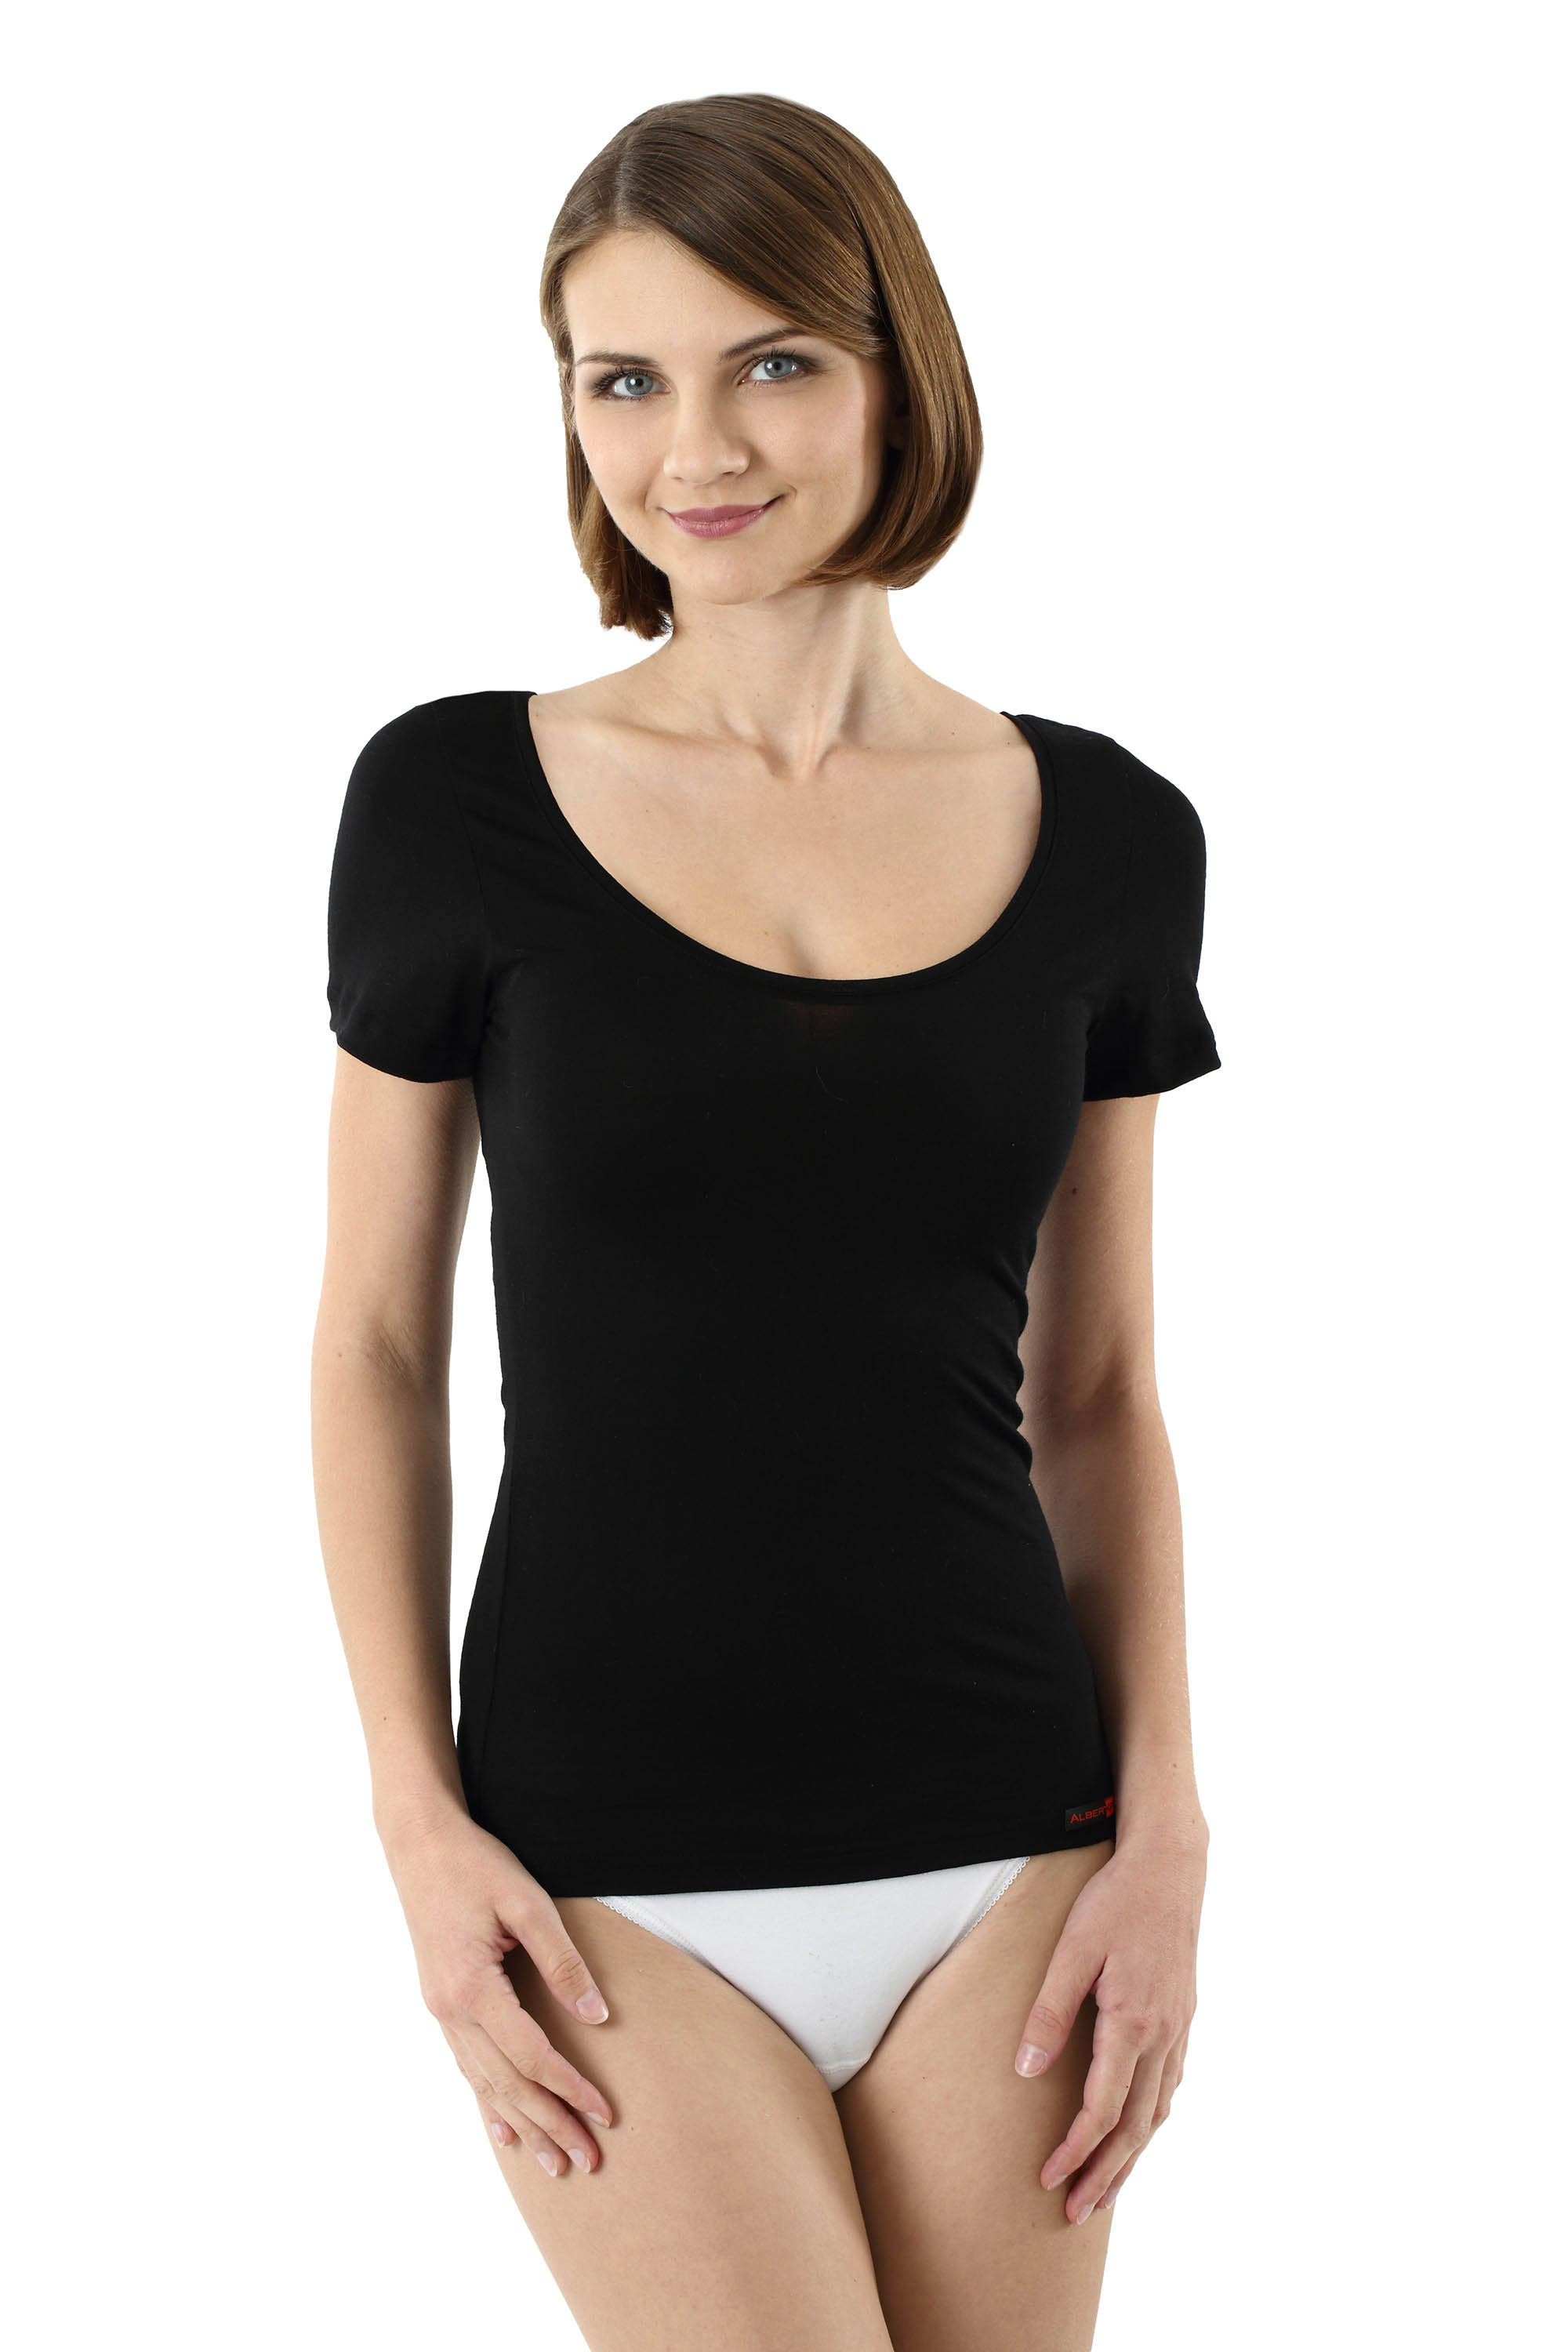 Women's undershirt merino wool short sleeves deep scoop neck black